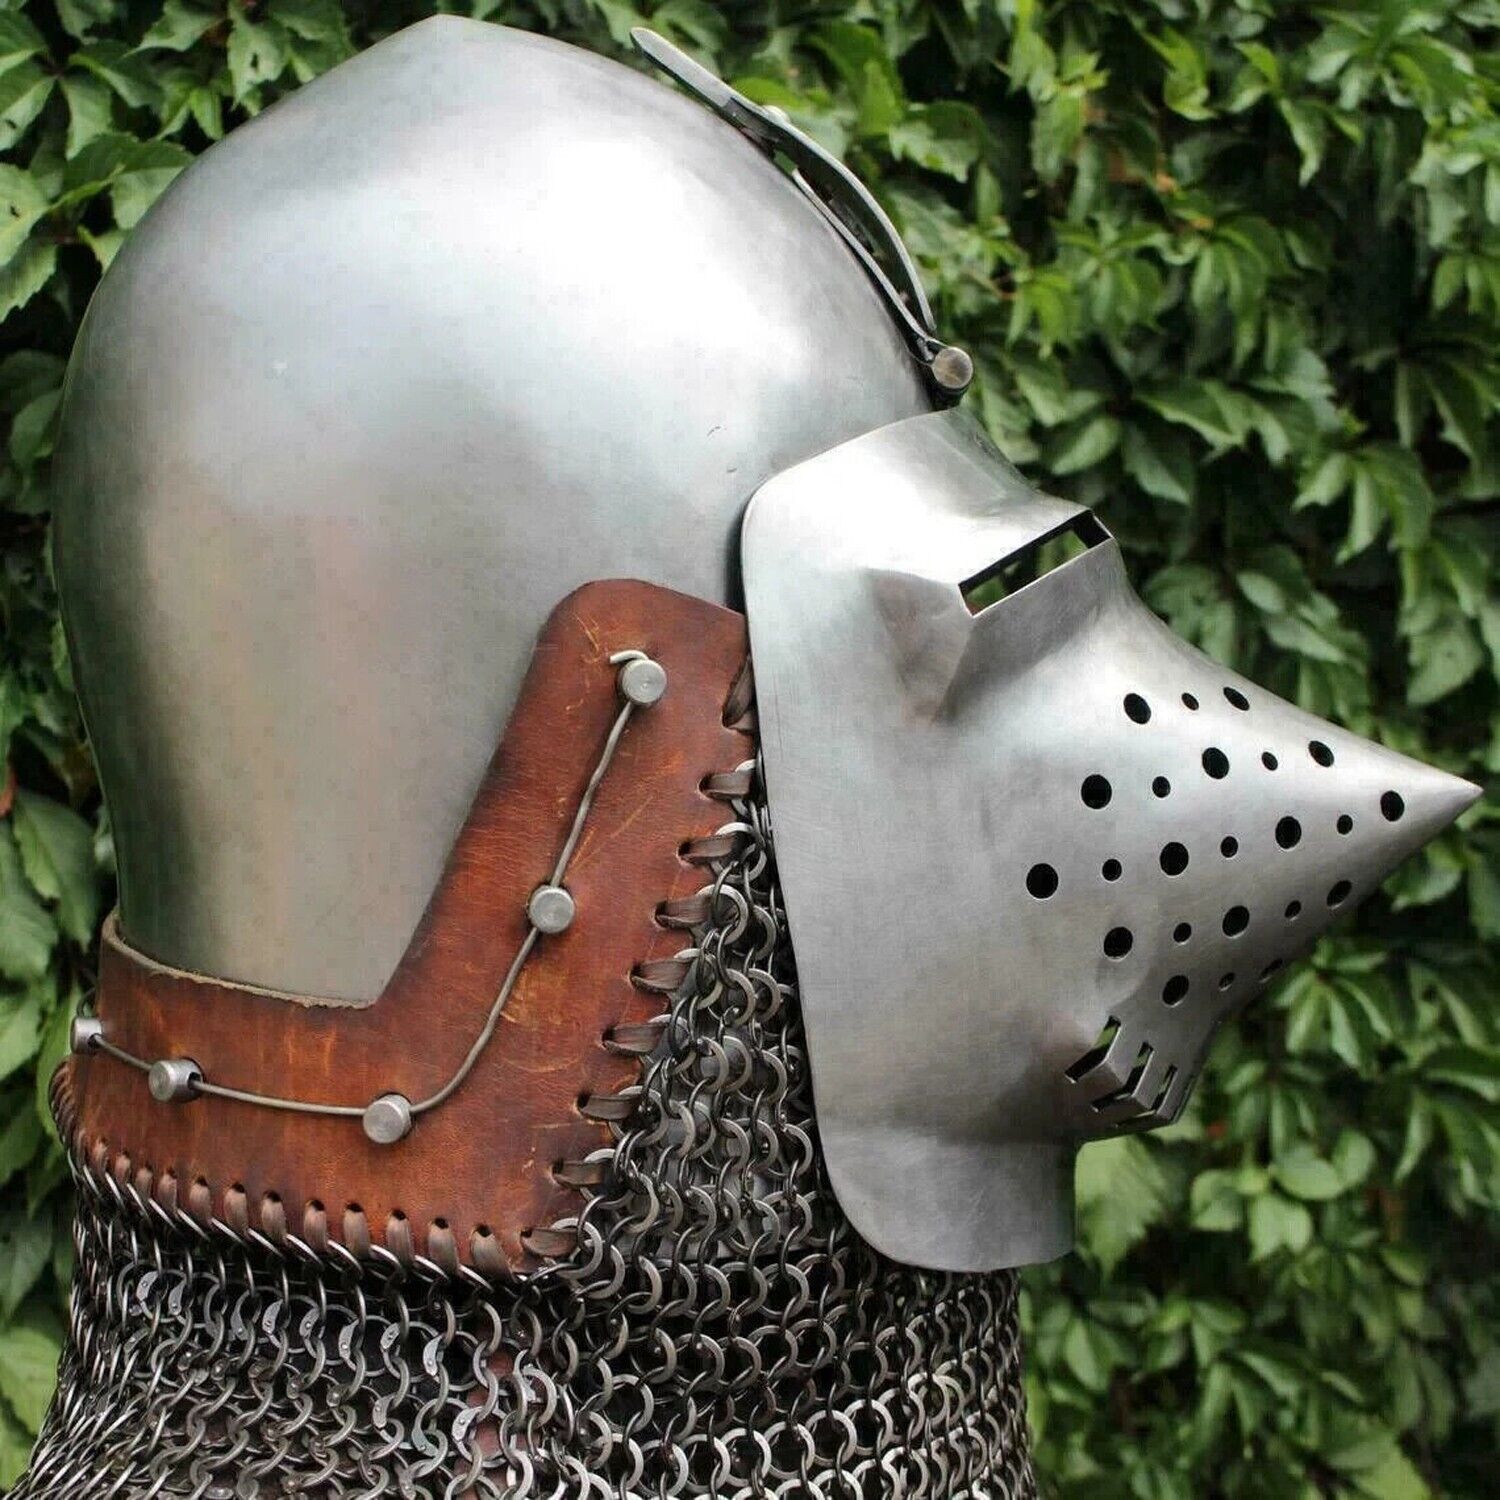 Medieval Klappvisor Hounskull Bascinet 14 Guage Steel Helmet with aventail gift